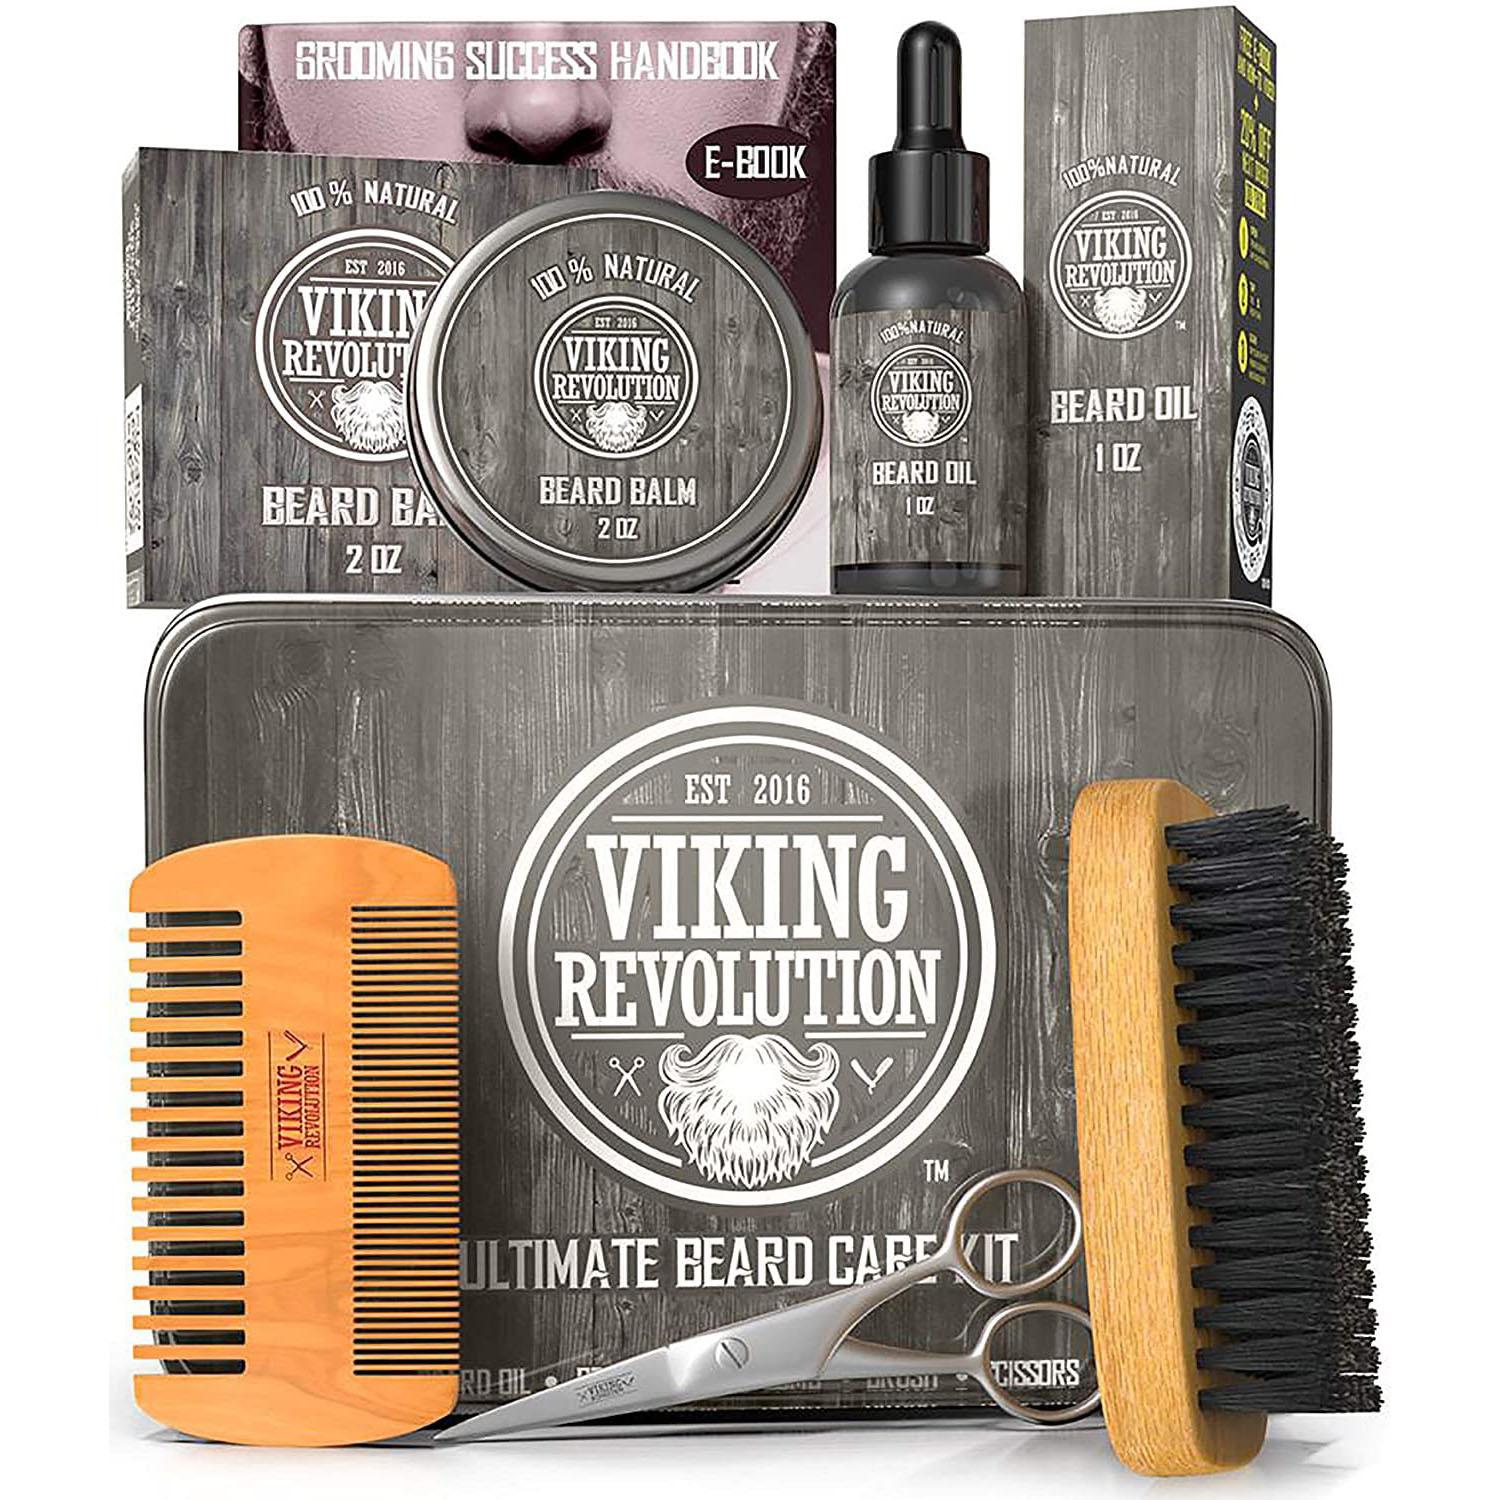 Viking Revolution Beard Care Kit for Men for $23.90